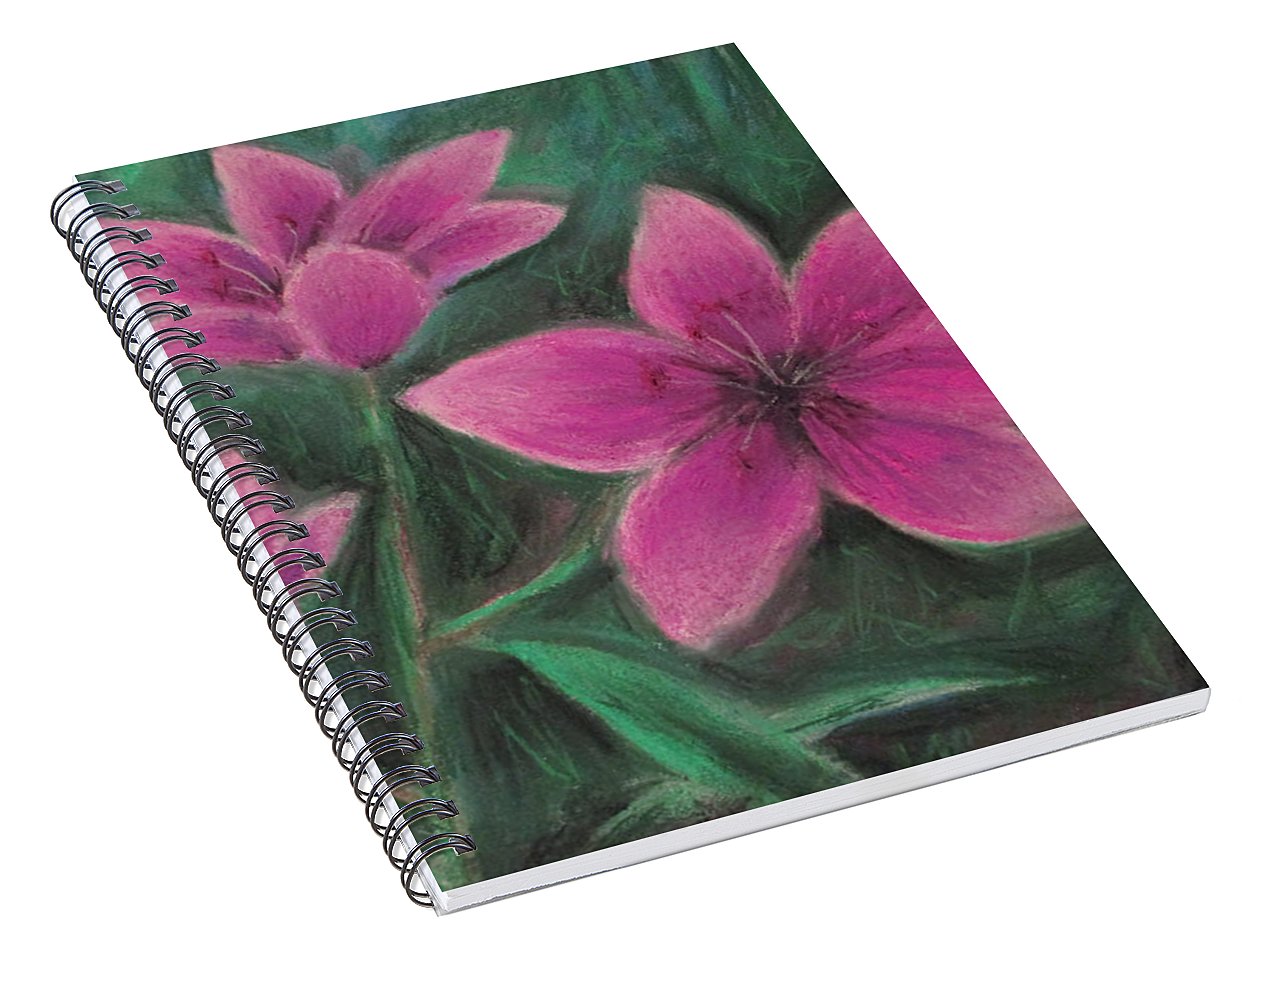 Pink Lilies - Spiral Notebook